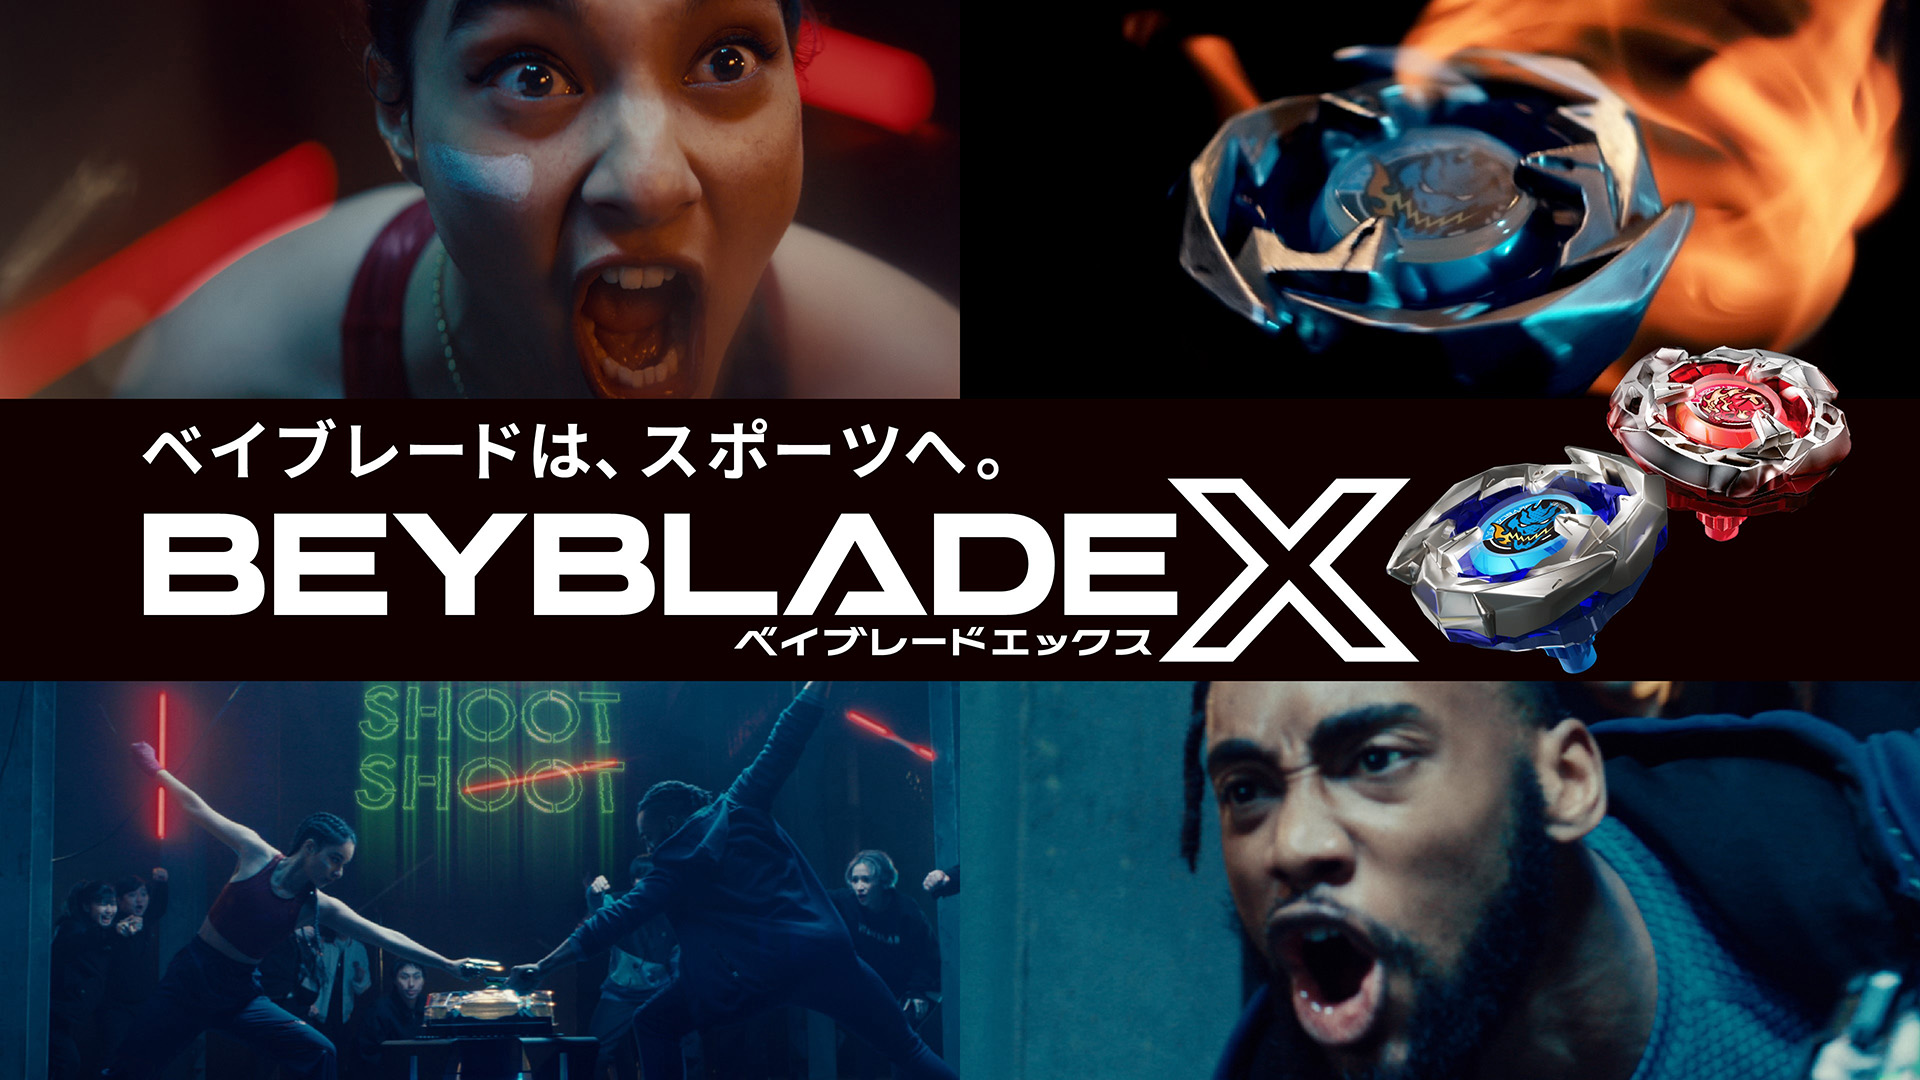 新ギミック「Xダッシュ」を搭載した第4世代ベイブレード「BEYBLADE X」が7月15日に発売 - HOBBY Watch